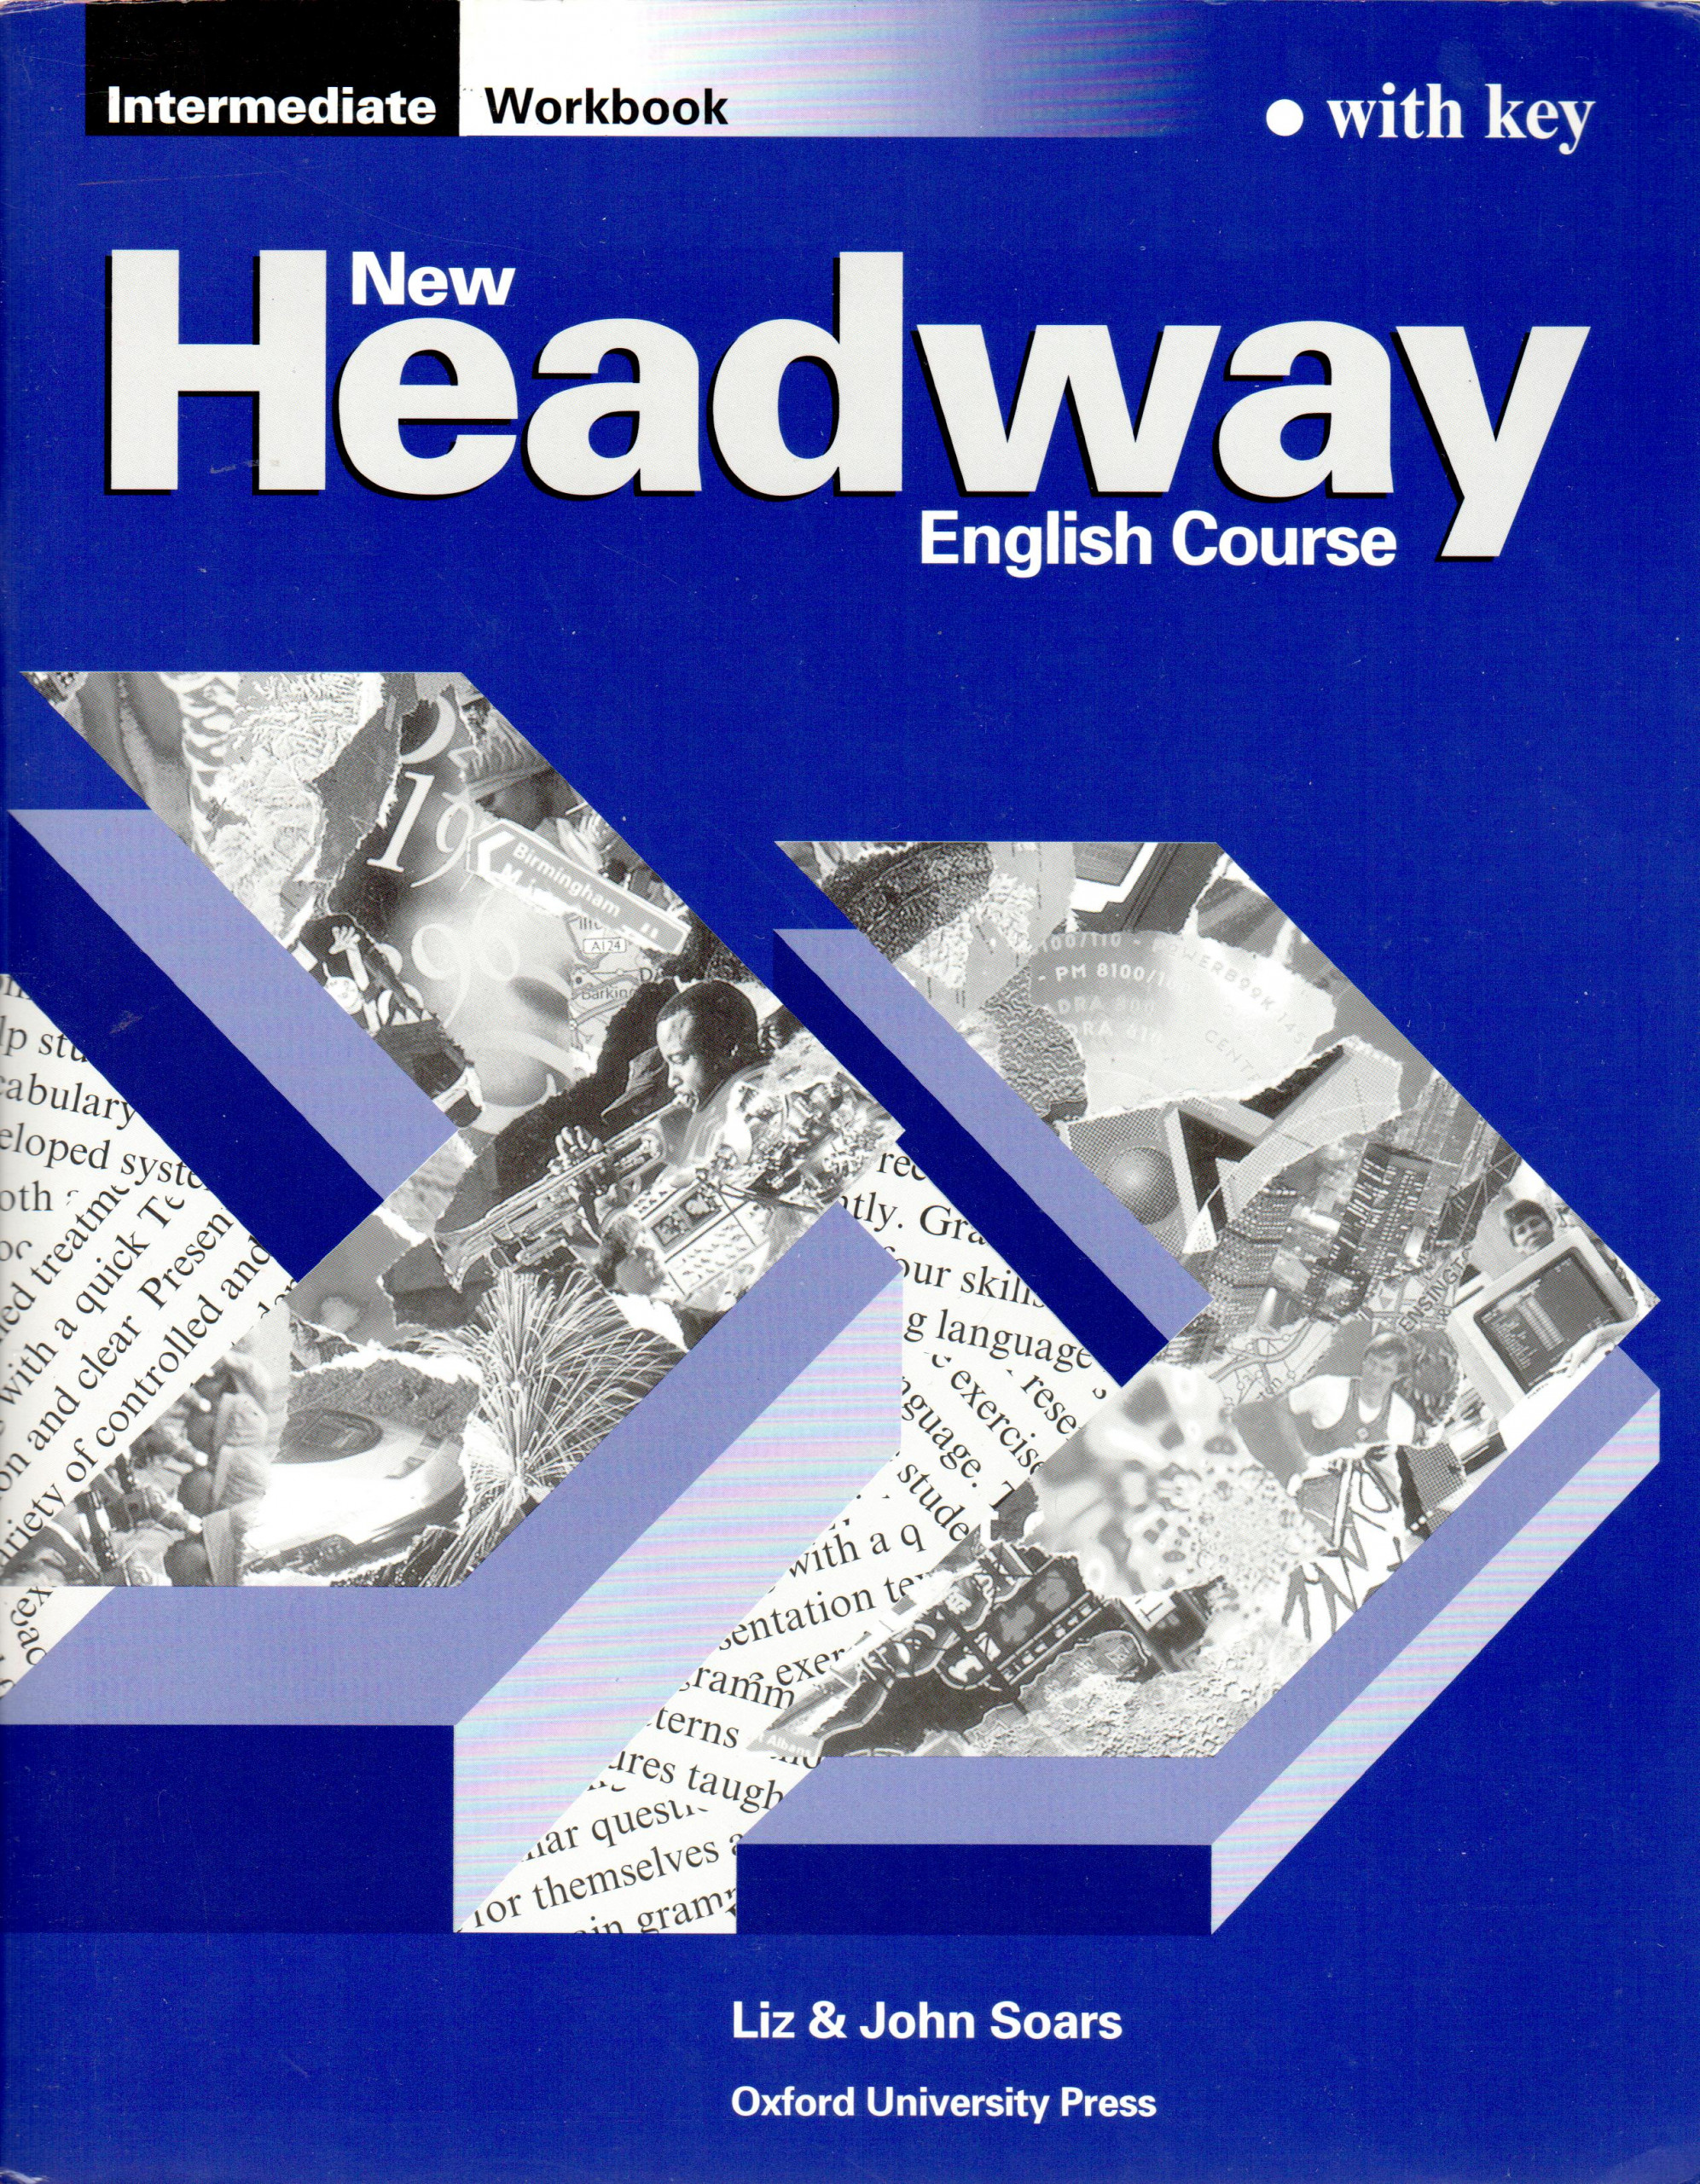 New Headway : Intermediate Workbook with Key - Náhled učebnice